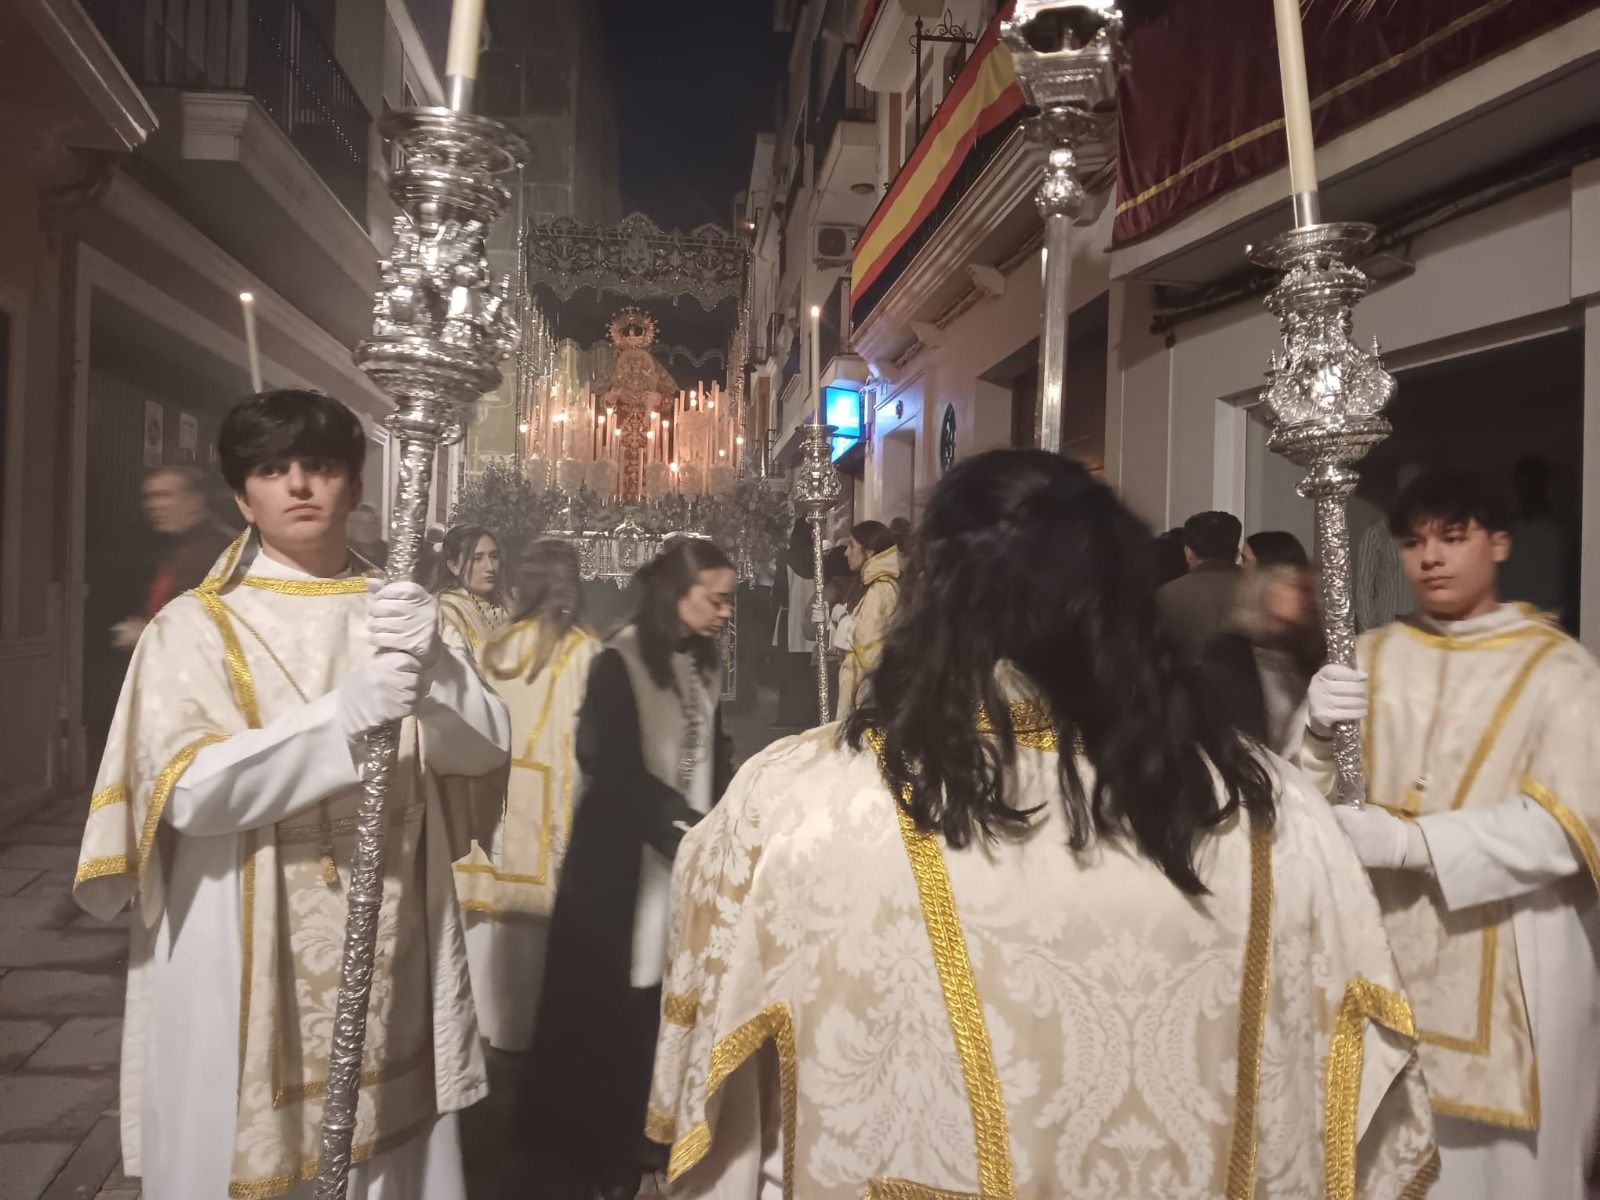 Jueves Santo en los pueblos de la provincia de Córdoba